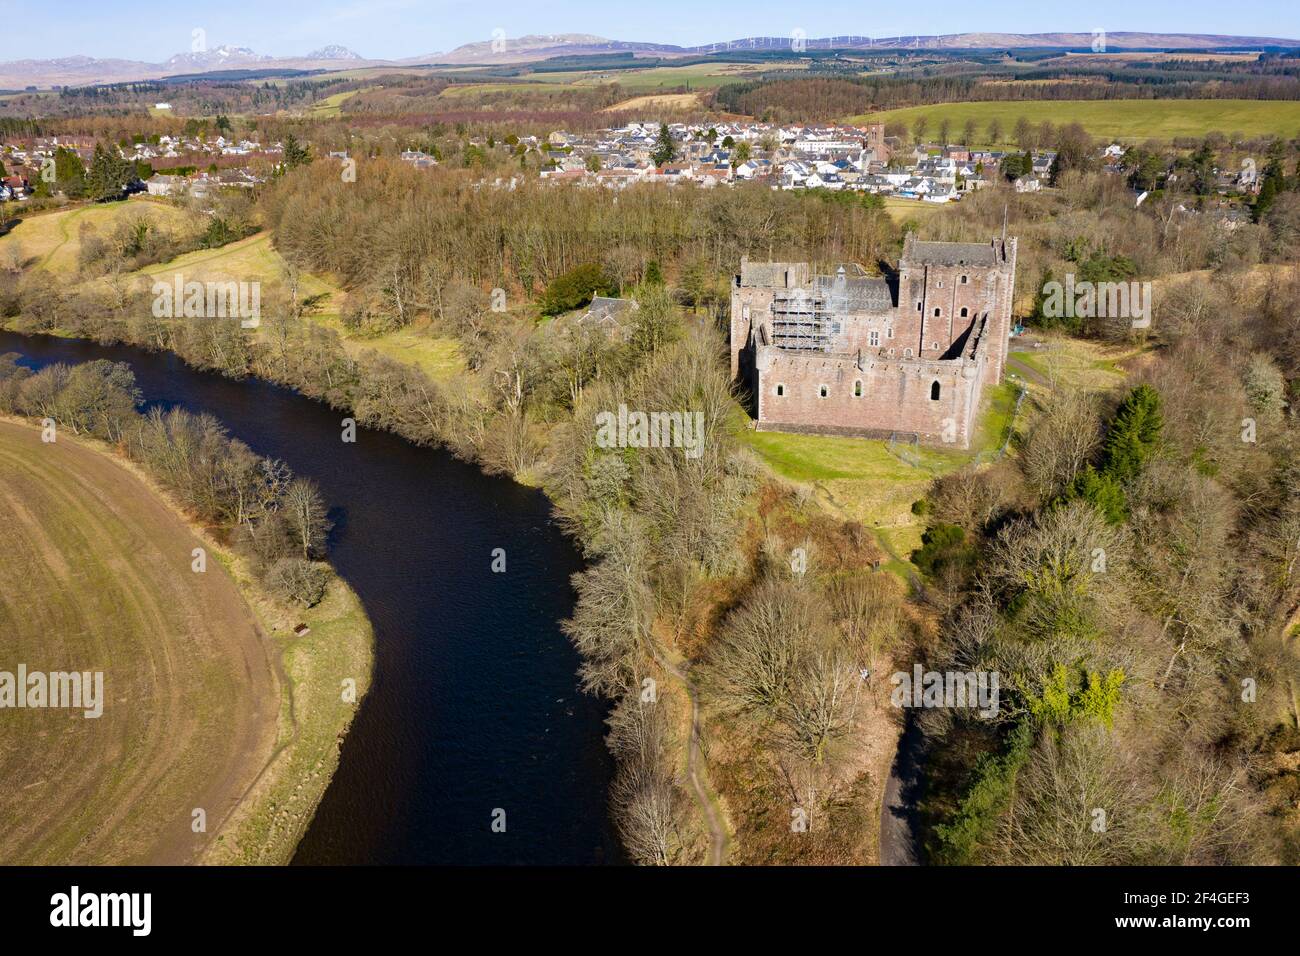 Vue aérienne du château de Doune au-dessus de la rivière Teith près de Doune, quartier de Stirling, centre, Écosse, Royaume-Uni Banque D'Images